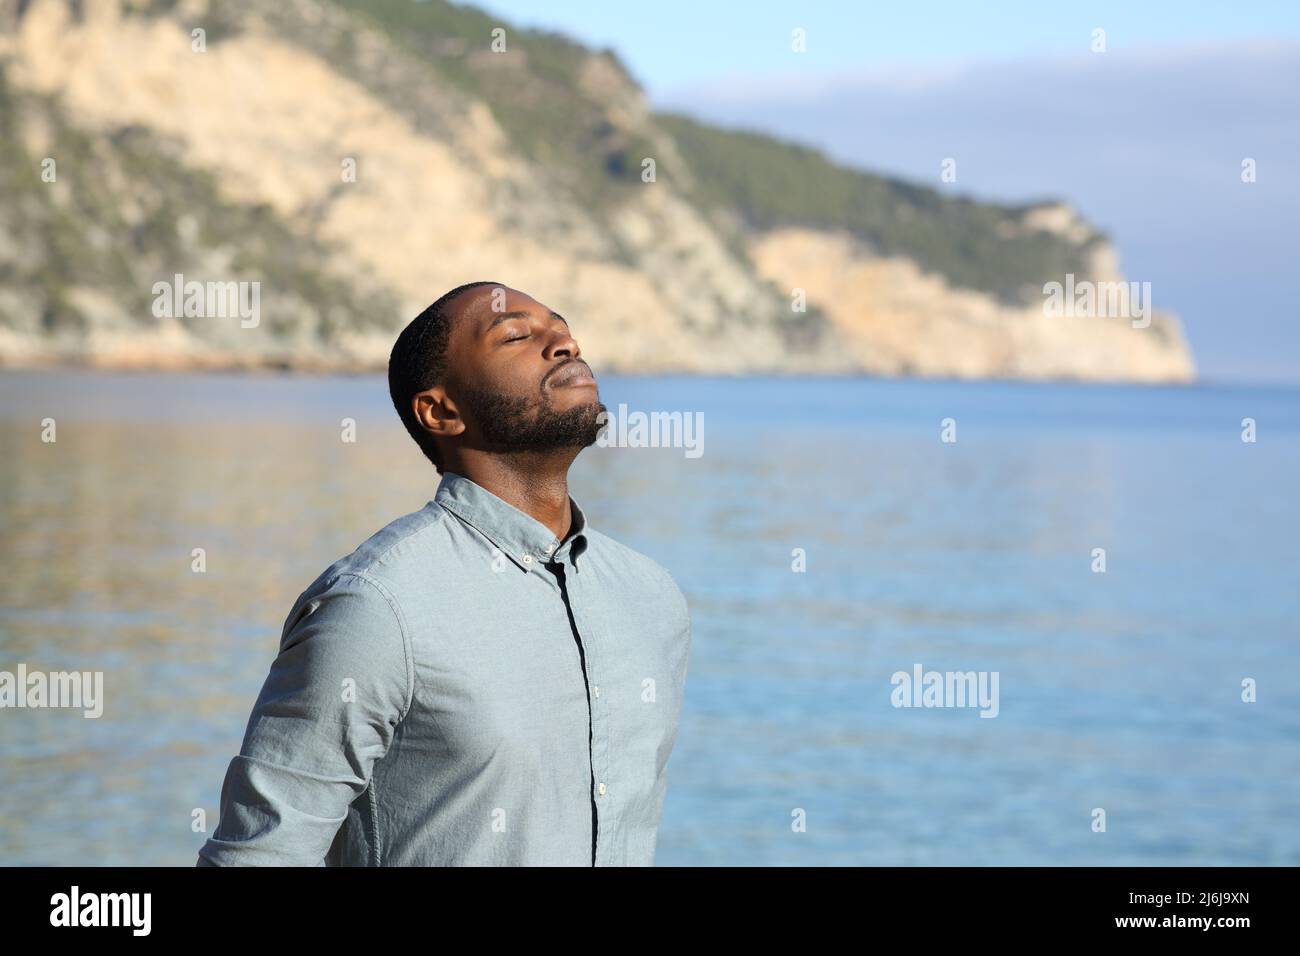 Homme à la peau noire se détendant et respirant de l'air frais sur la plage Banque D'Images